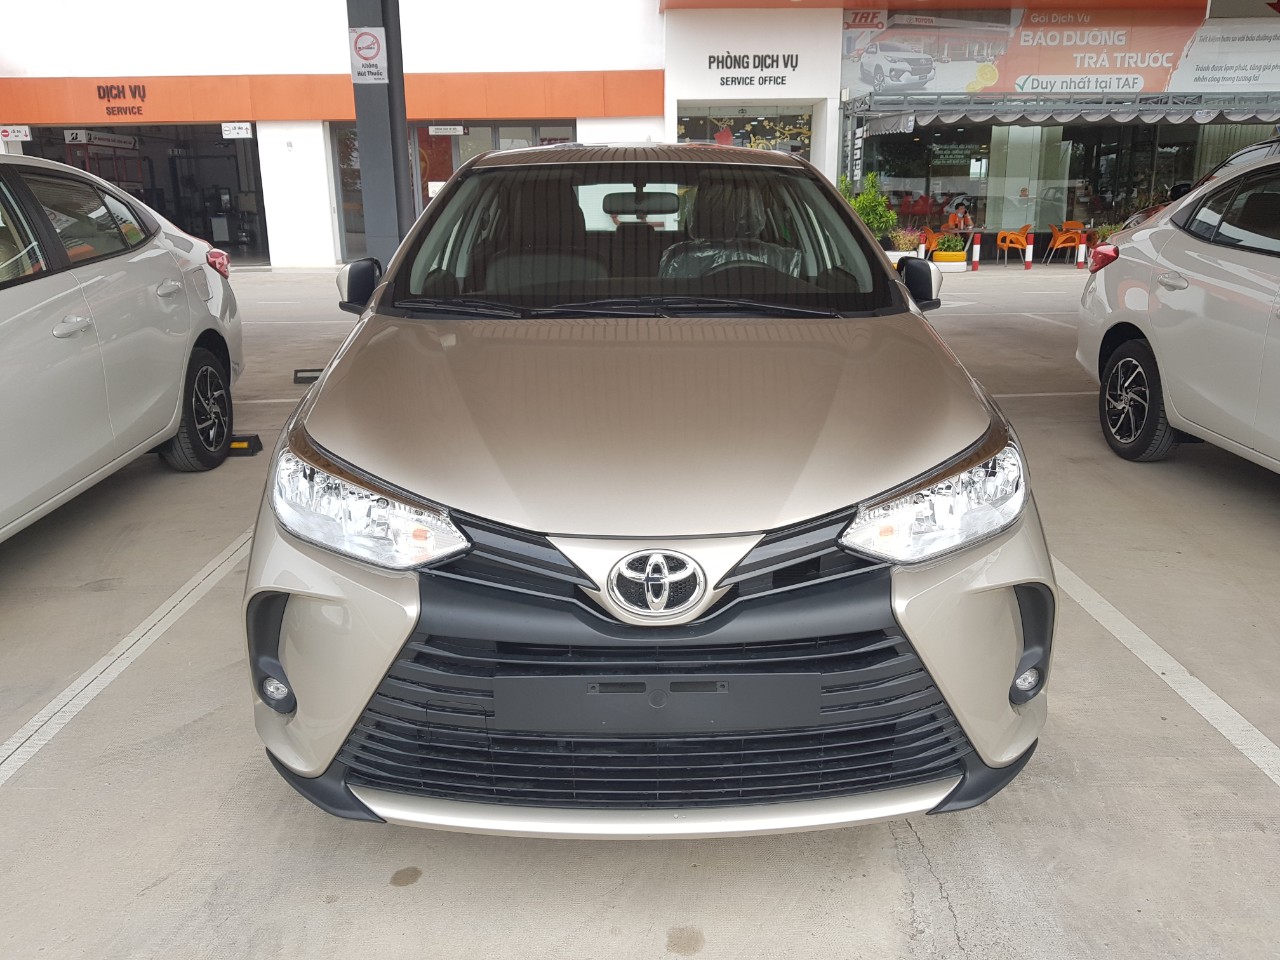 Toyota Vios 2021 số sàn giảm giá tiền mặt - Ưu đãi lãi suất trả góp chỉ 0.41%/tháng-0